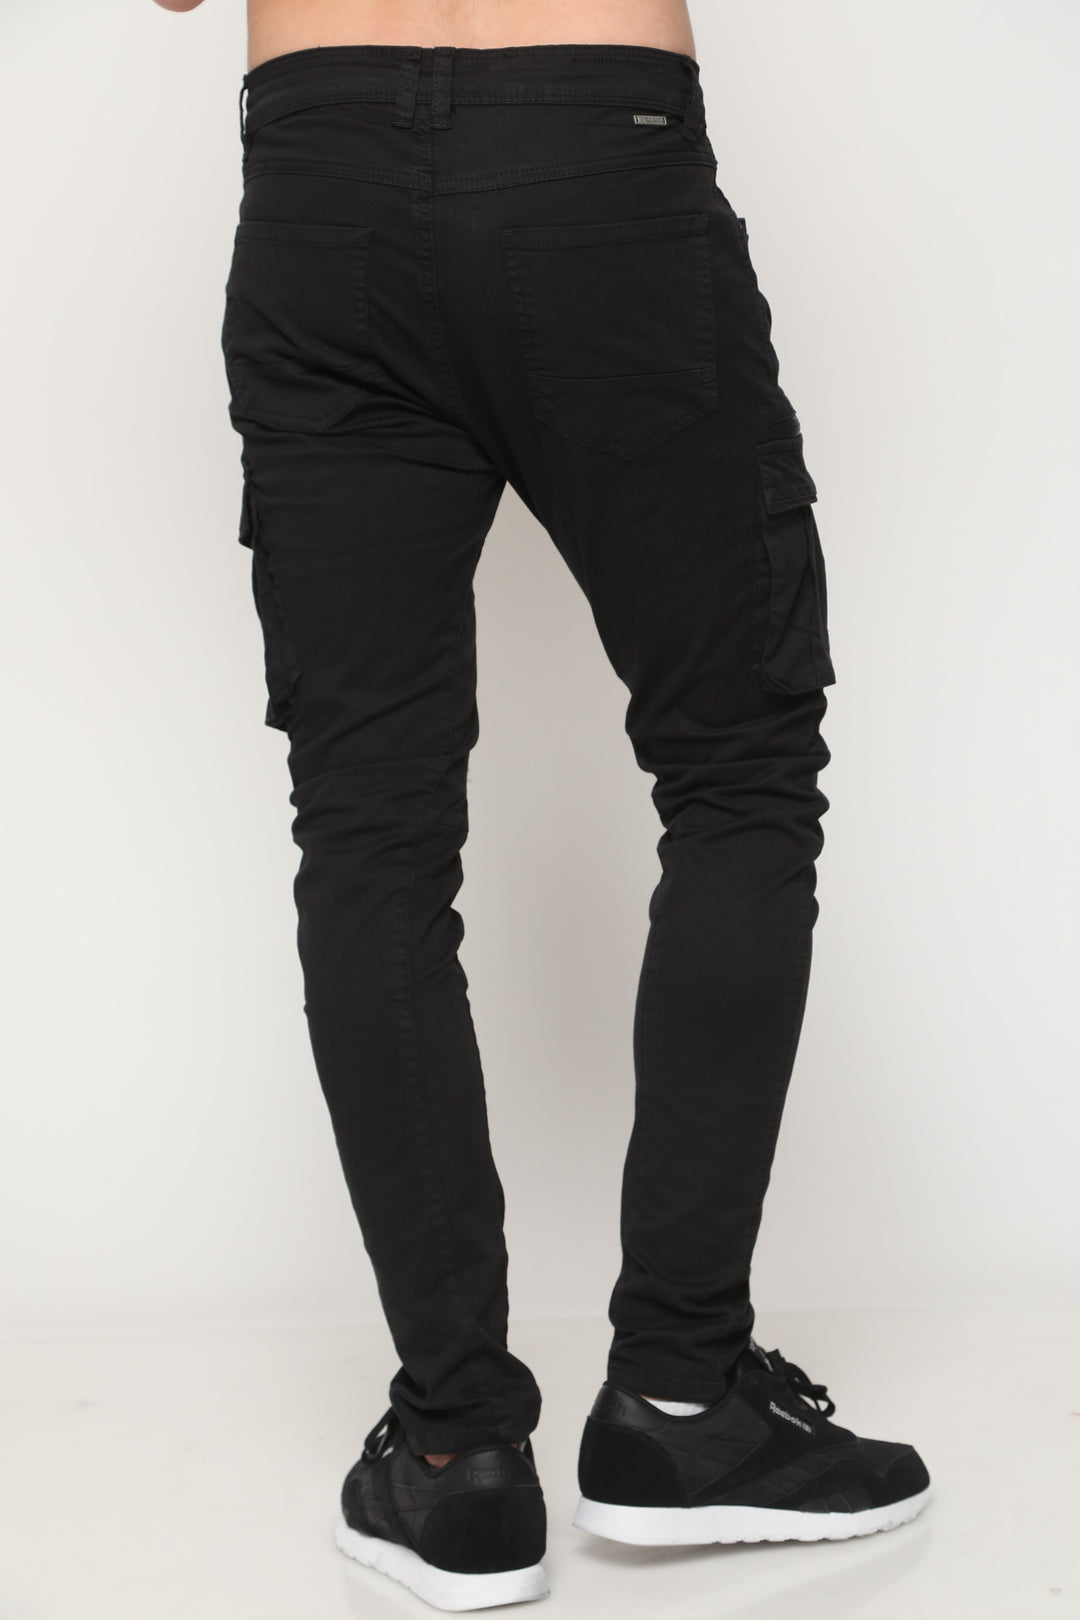 דגמח שחור - canavaro jeans